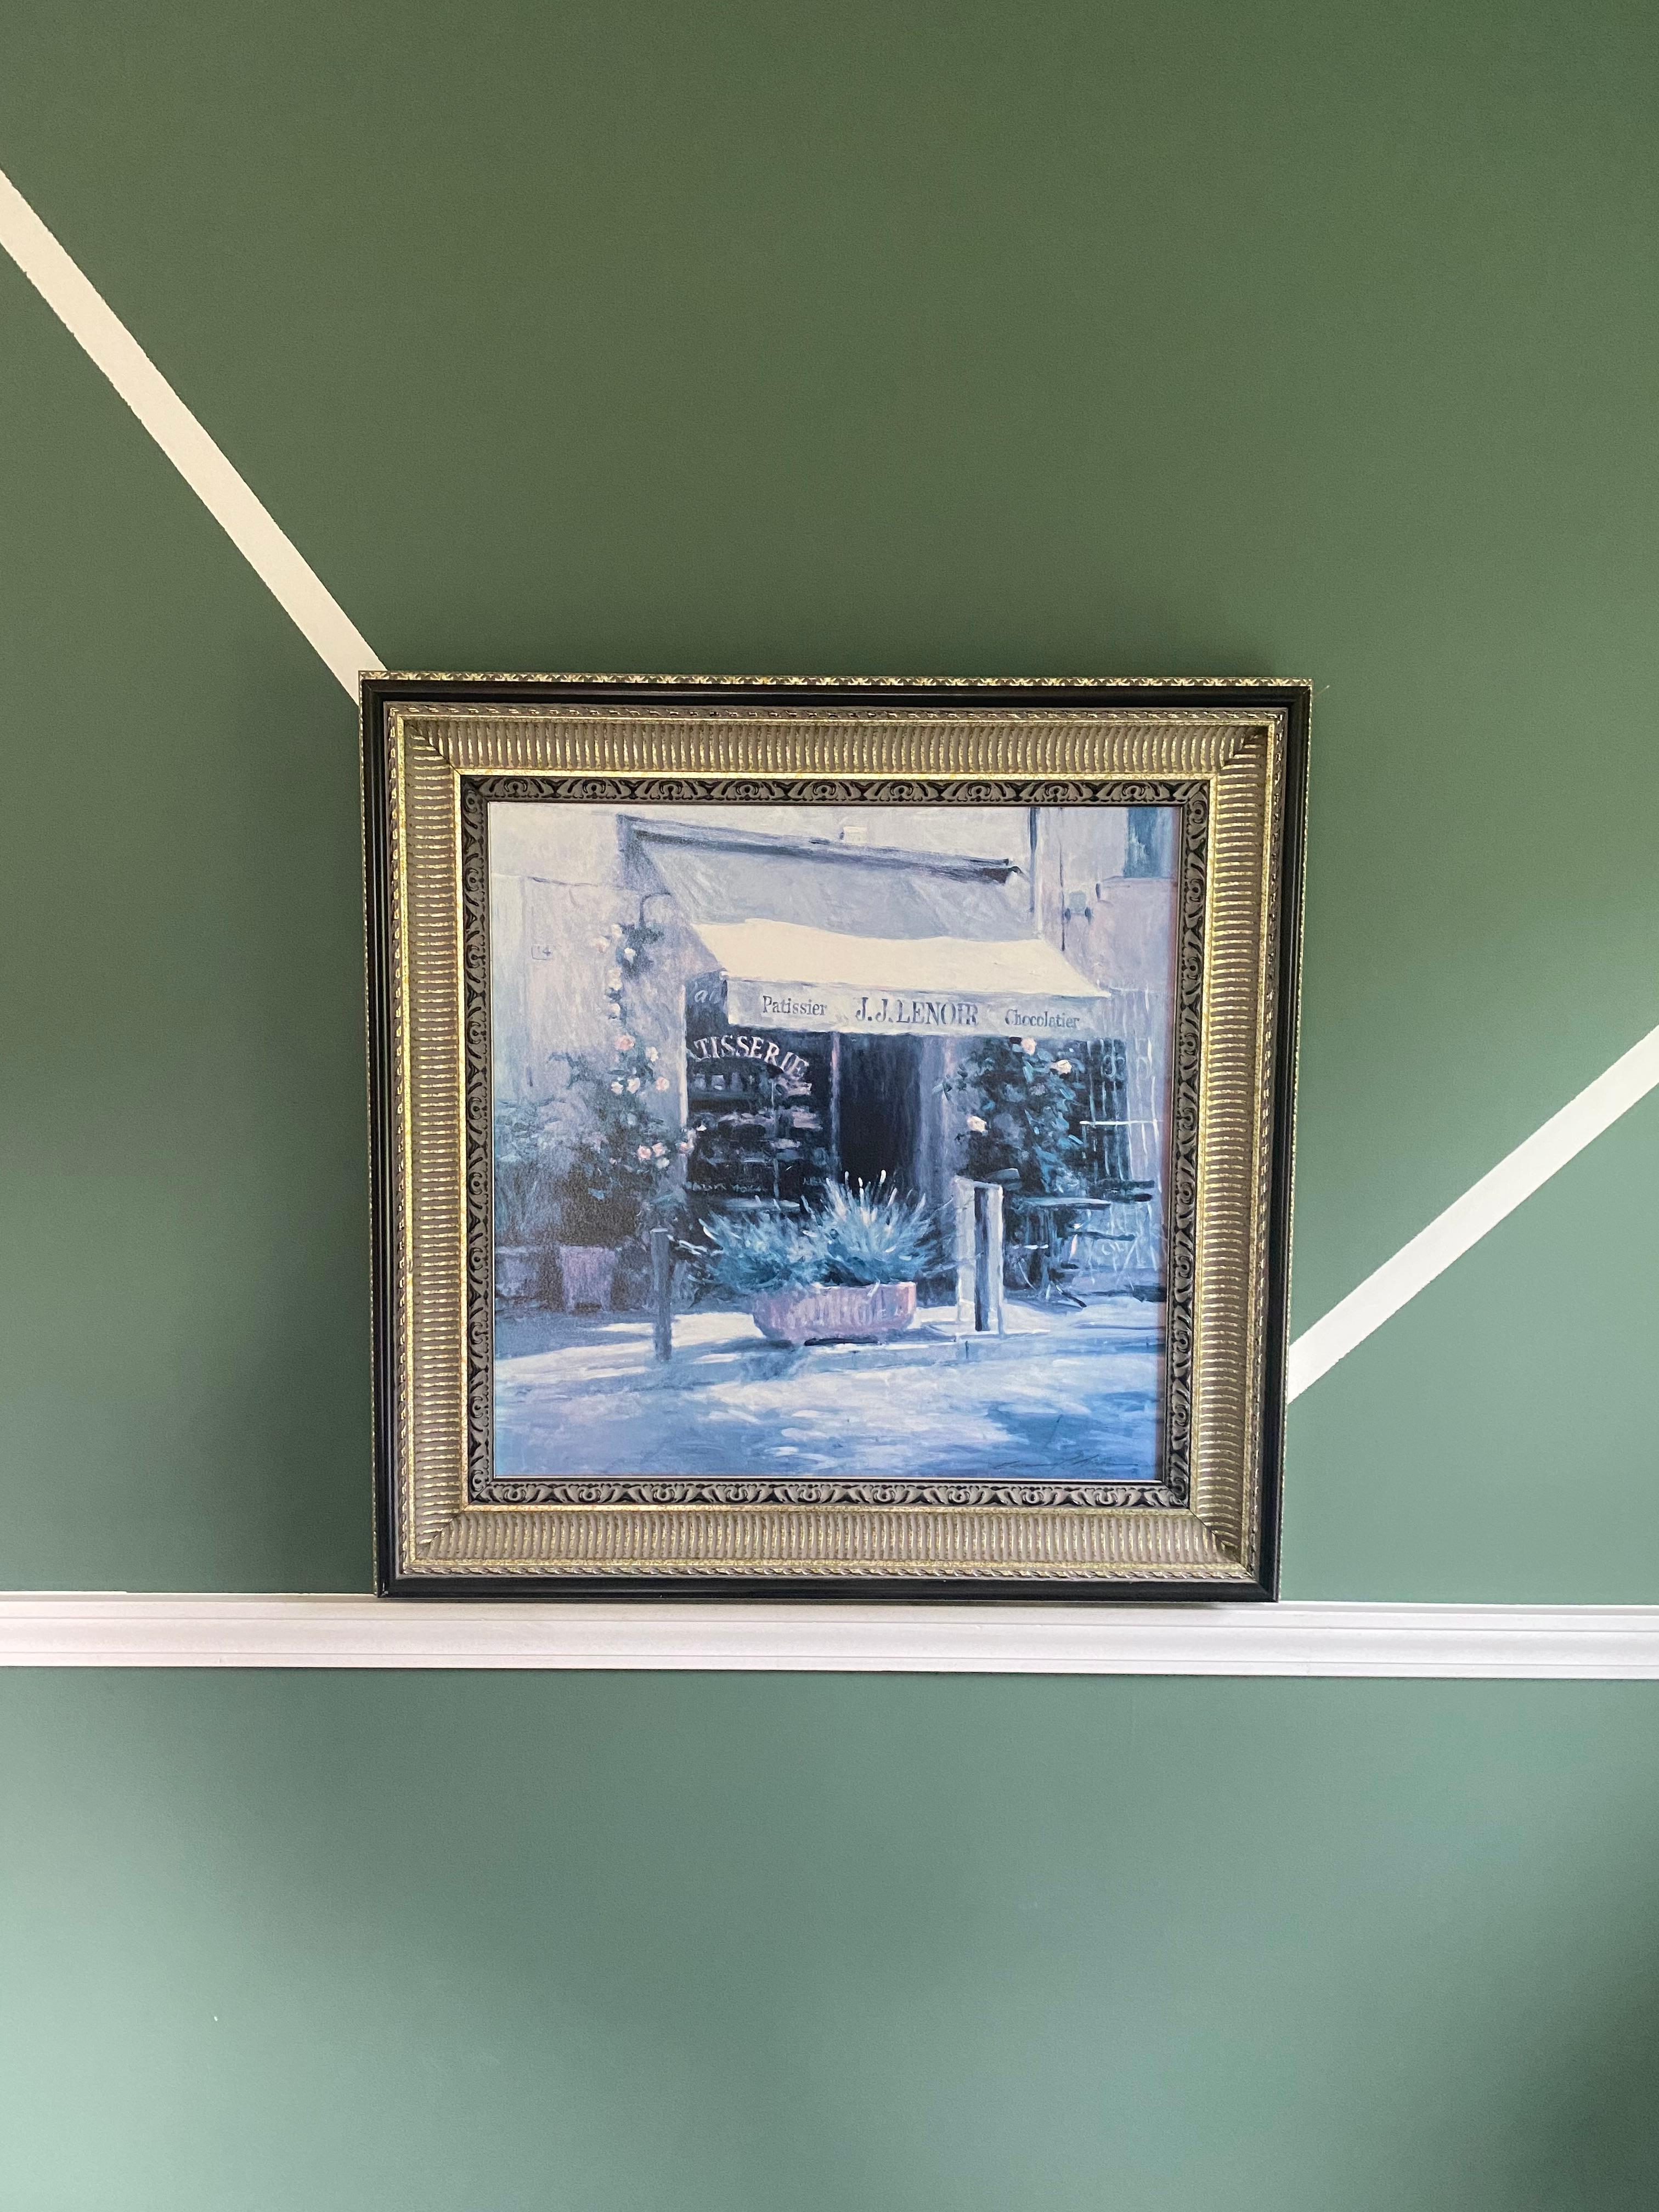 Magnifique œuvre d'art giclée (impression sur toile) signée par Leonard Wren. Ses œuvres ont été inspirées par ses nombreux voyages et sont devenues célèbres pour la beauté du monde qu'elles capturent à travers la joie de la lumière et de la vie.
